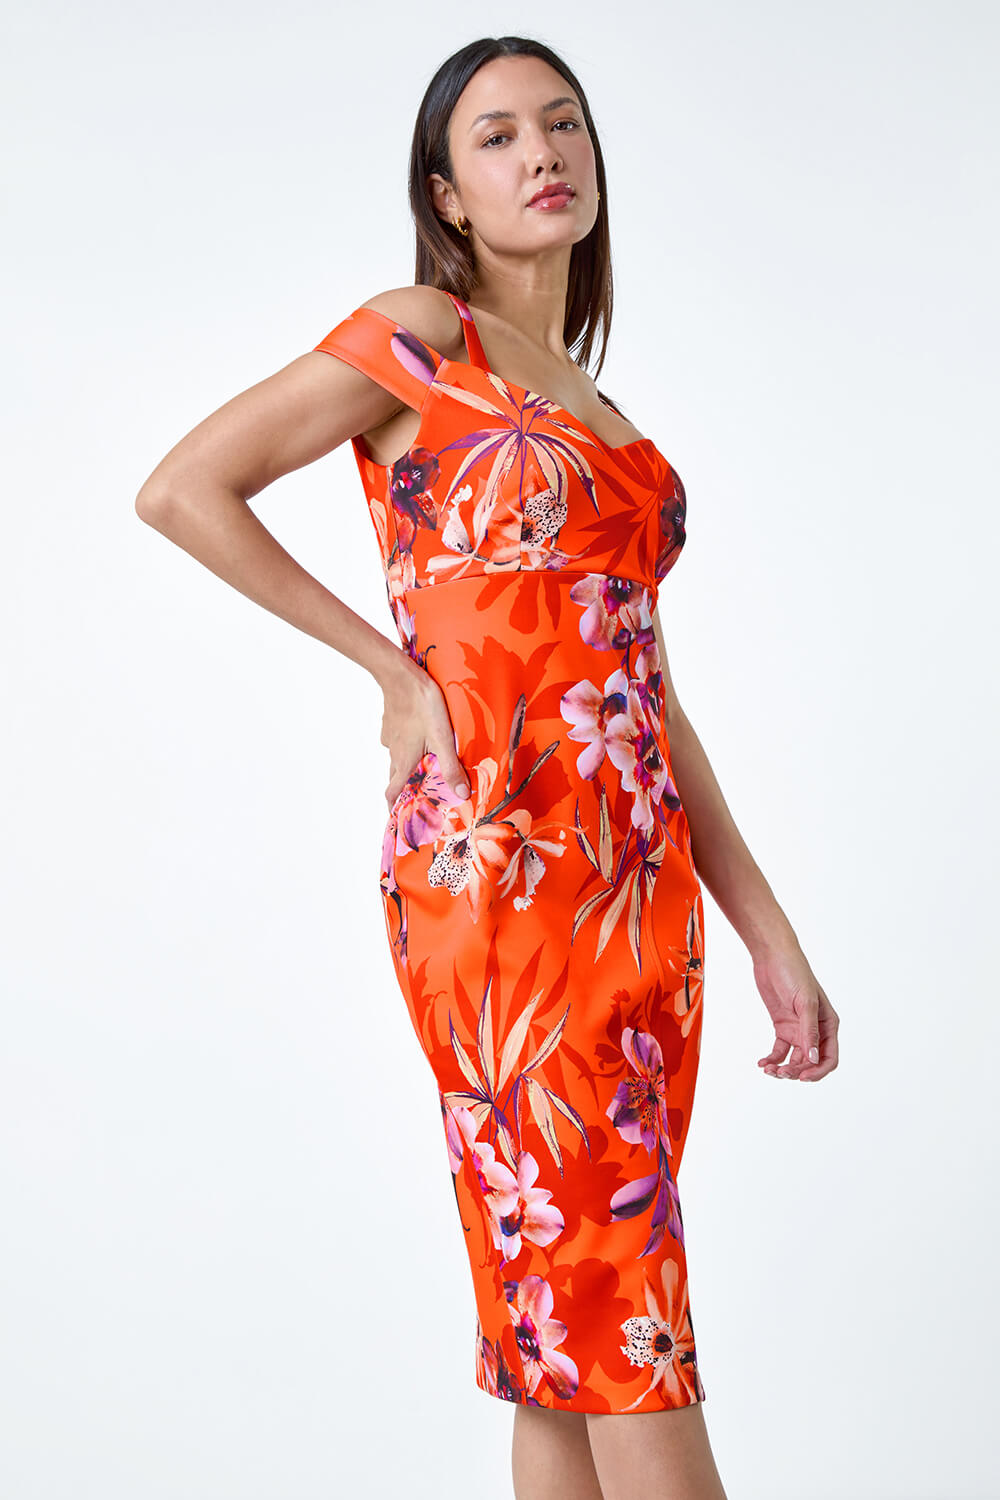 ORANGE Premium Stretch Floral Cold Shoulder Dress, Image 2 of 5